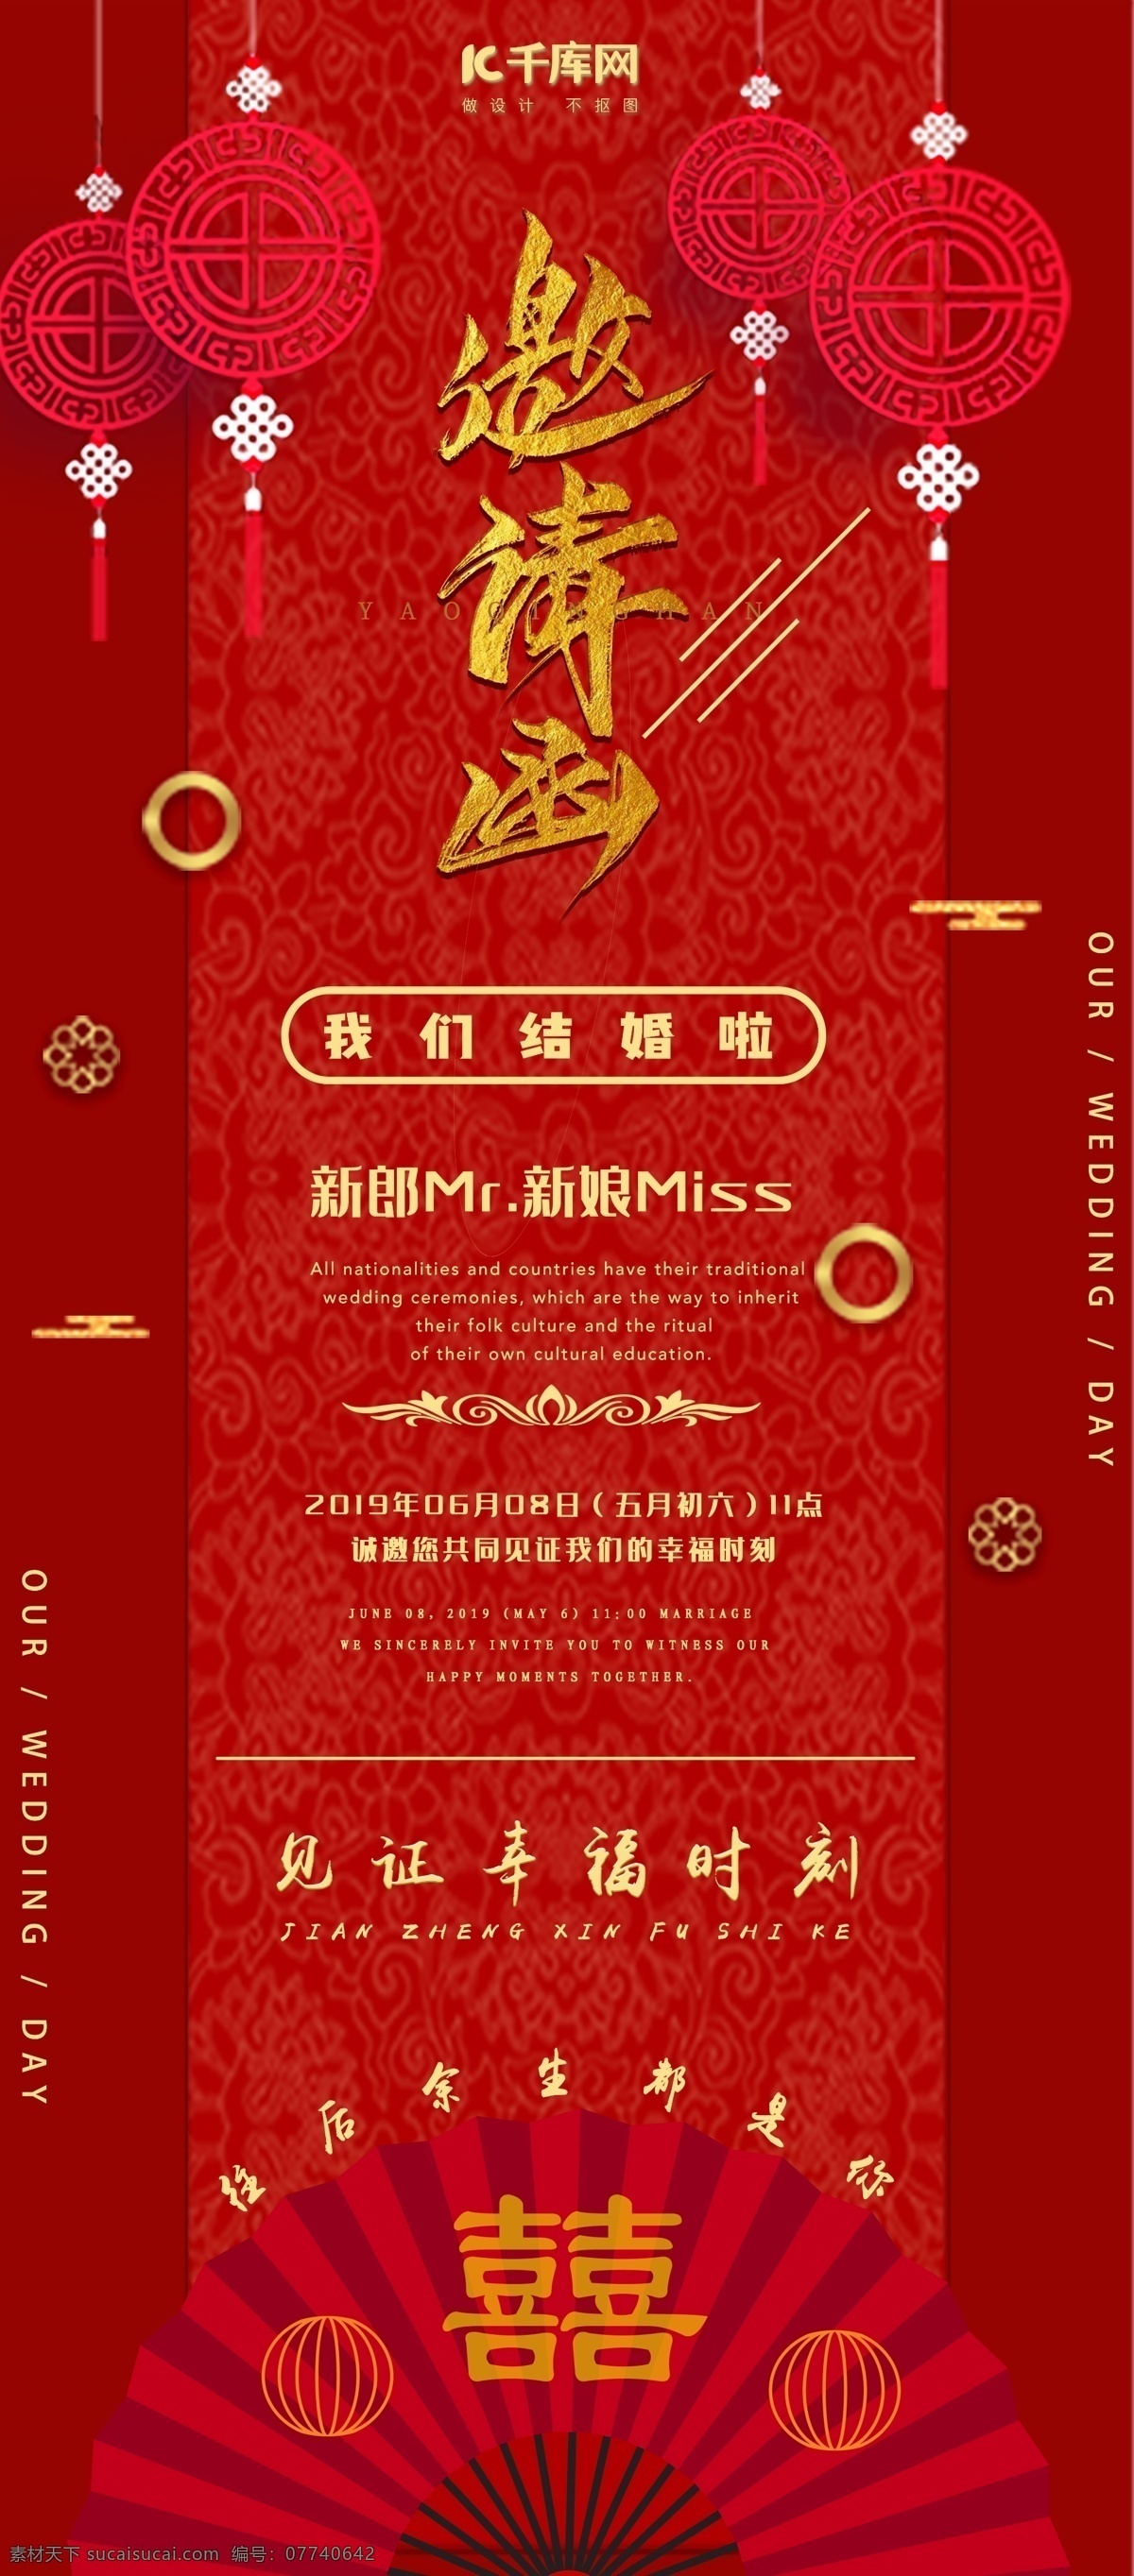 中国 红 剪纸 风 婚礼 邀请函 x 展架 中国风 中国结 婚礼纪 云纹 扇子